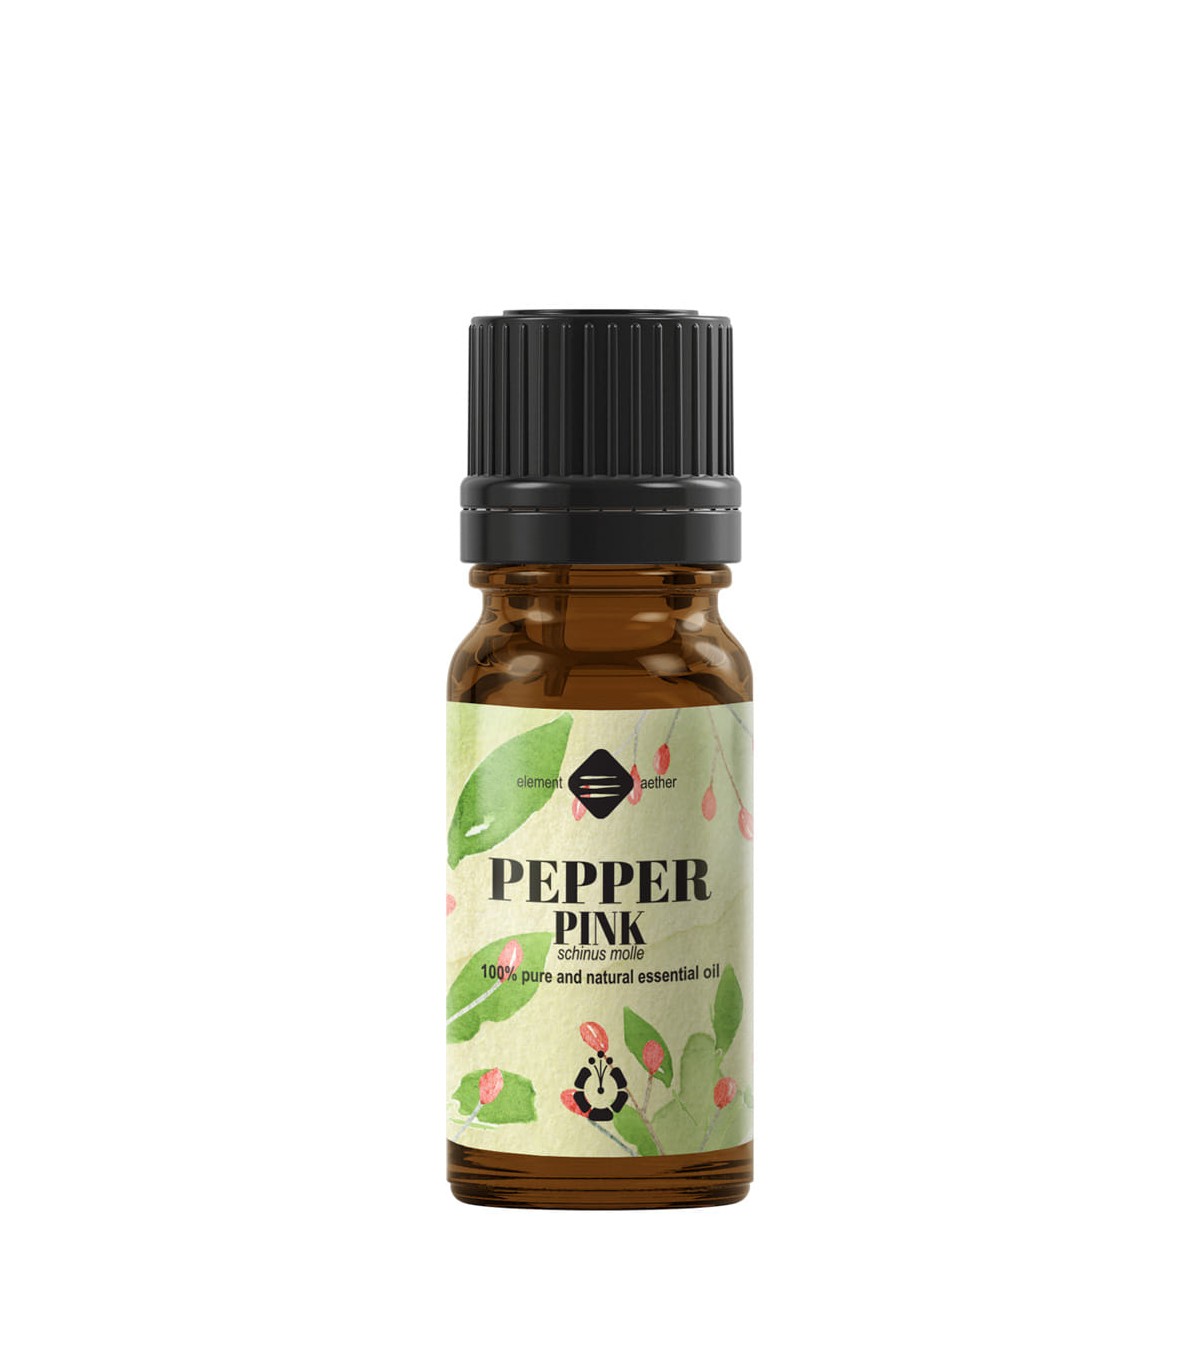 Pink Peppercorn pure essential oil